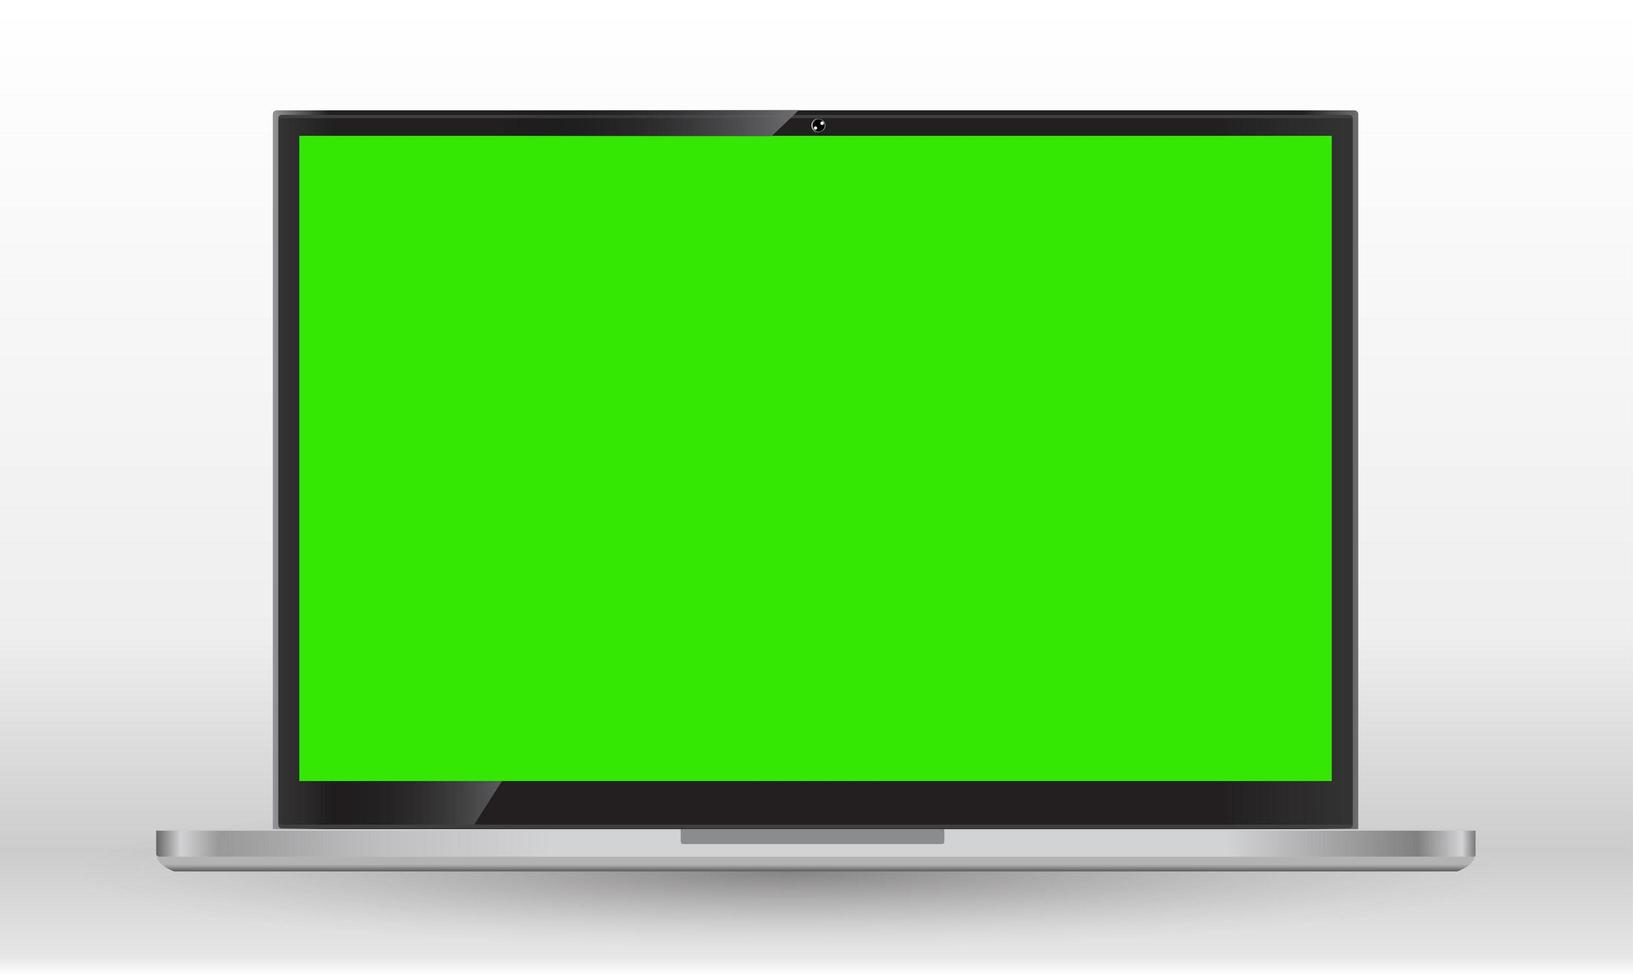 ensemble d'écrans d'ordinateur réalistes, d'ordinateurs portables, de tablettes et de téléphones portables. gadgets électroniques sur fond blanc. écran vert. concept d'appareil mobile de vecteur. vecteur